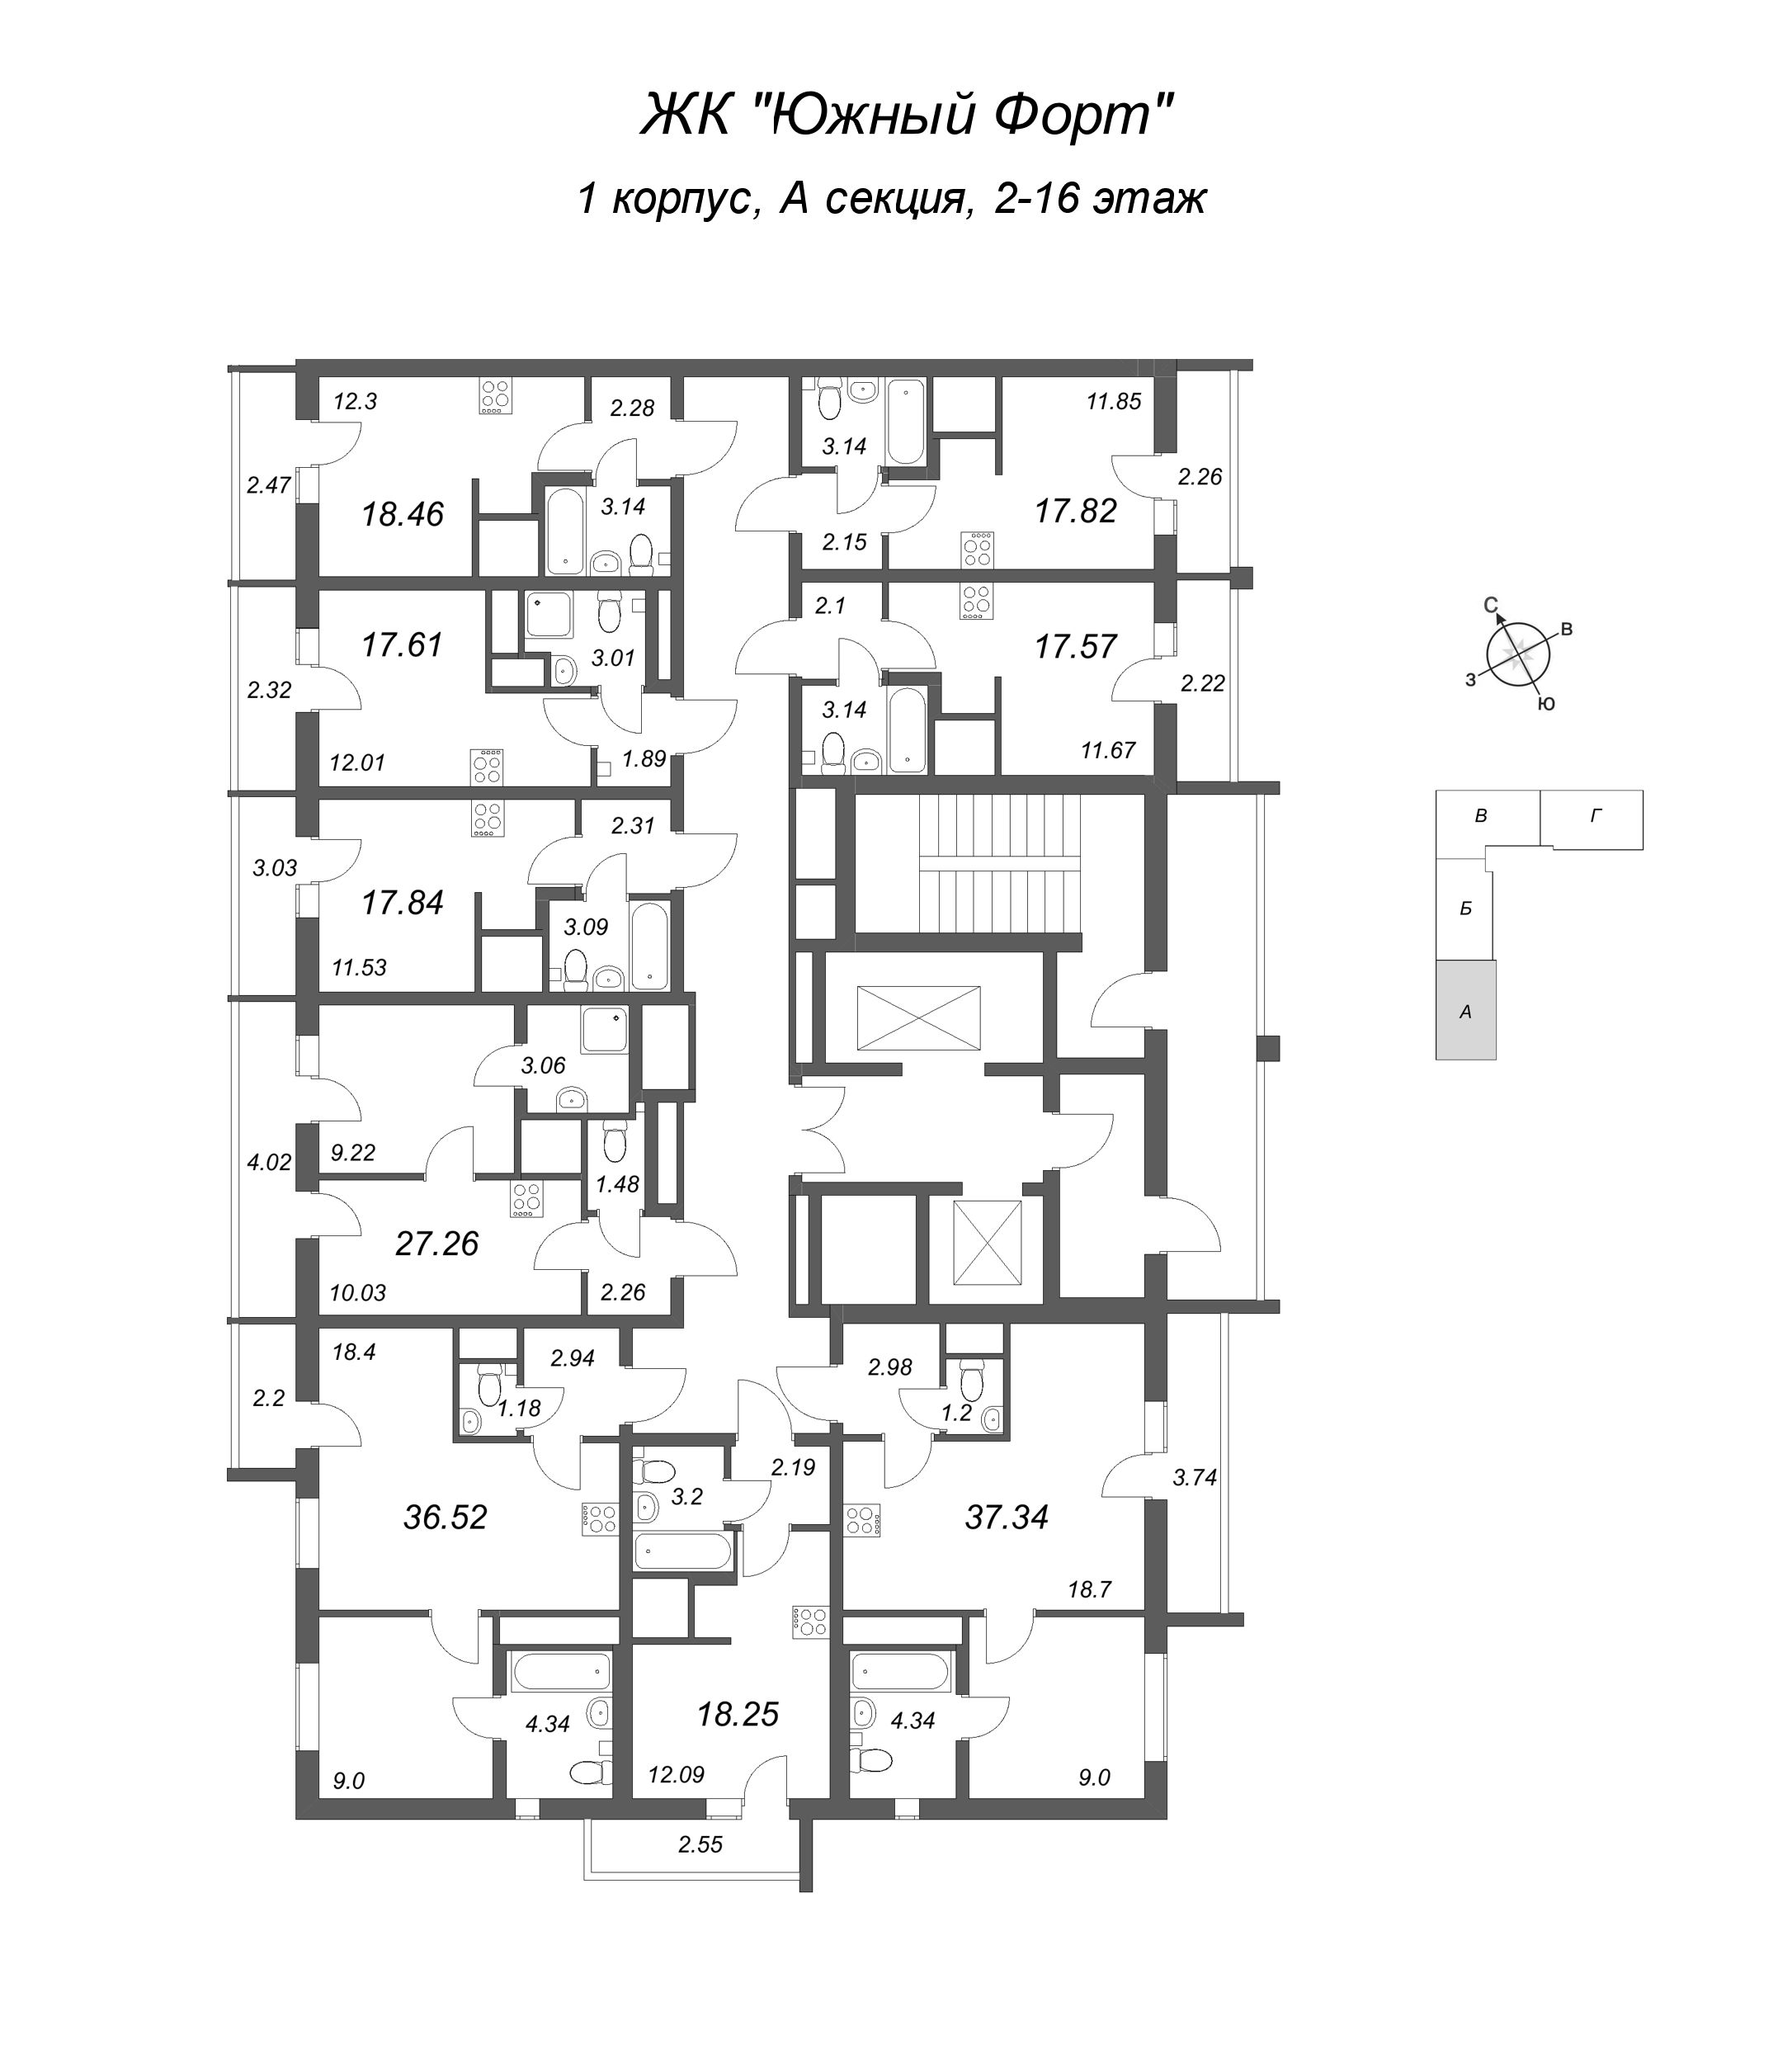 1-комнатная квартира, 27.26 м² - планировка этажа